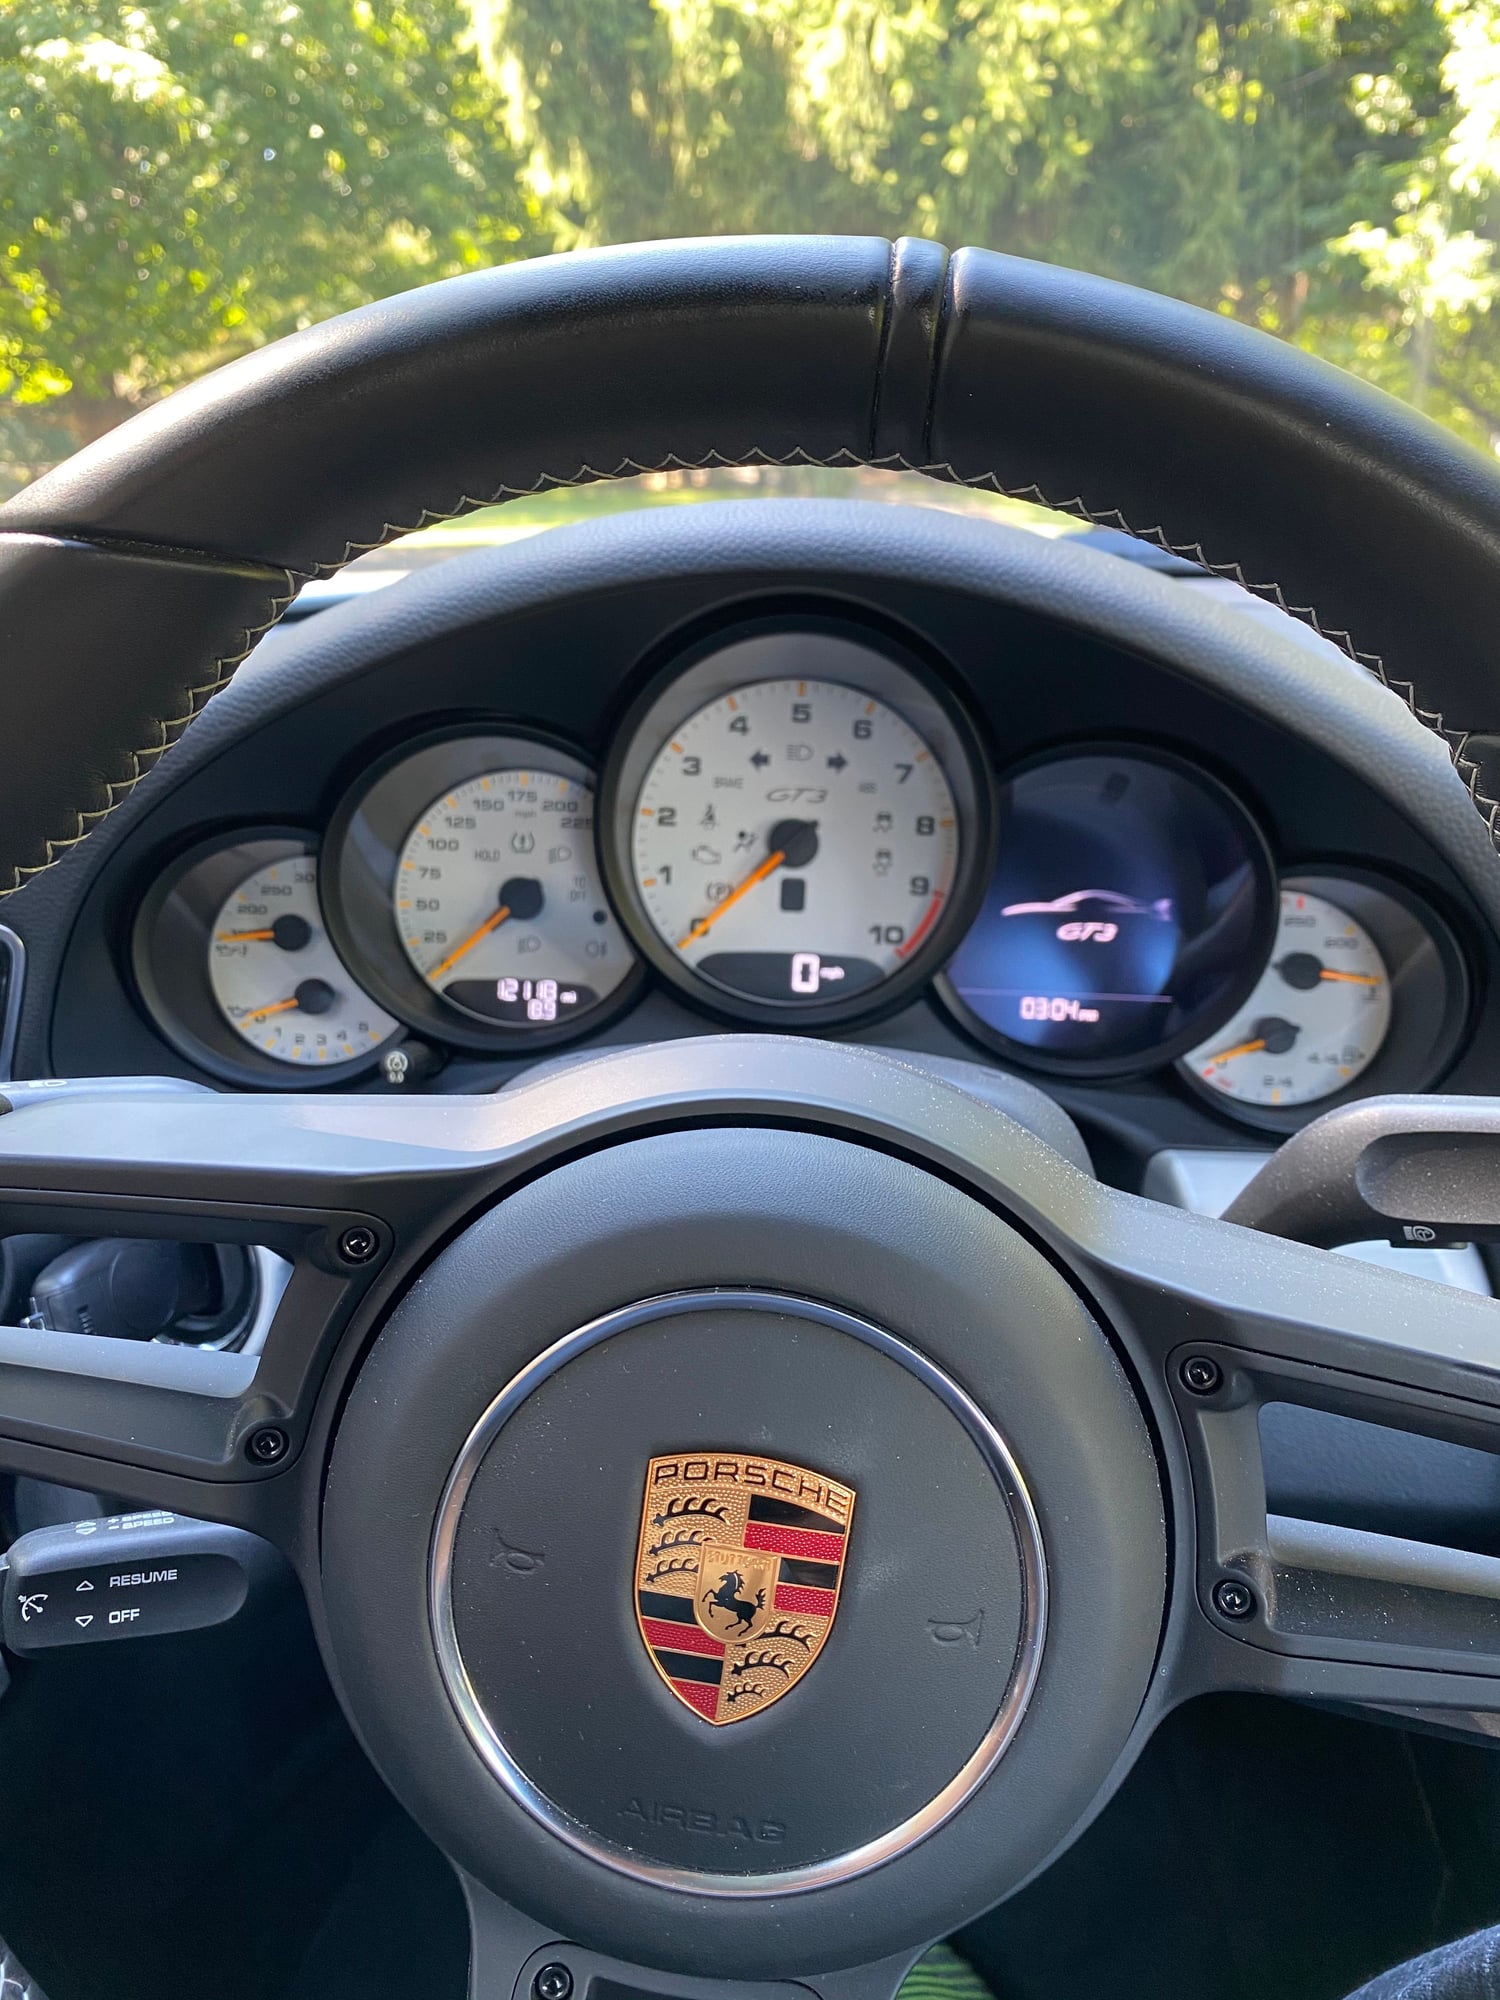 2018 Porsche 911 - 2018 Porsche GT3 6MT - New - VIN WP0AC2A98JS176577 - 12,000 Miles - 6 cyl - 2WD - Manual - Coupe - White - Barrington, IL 60010, United States